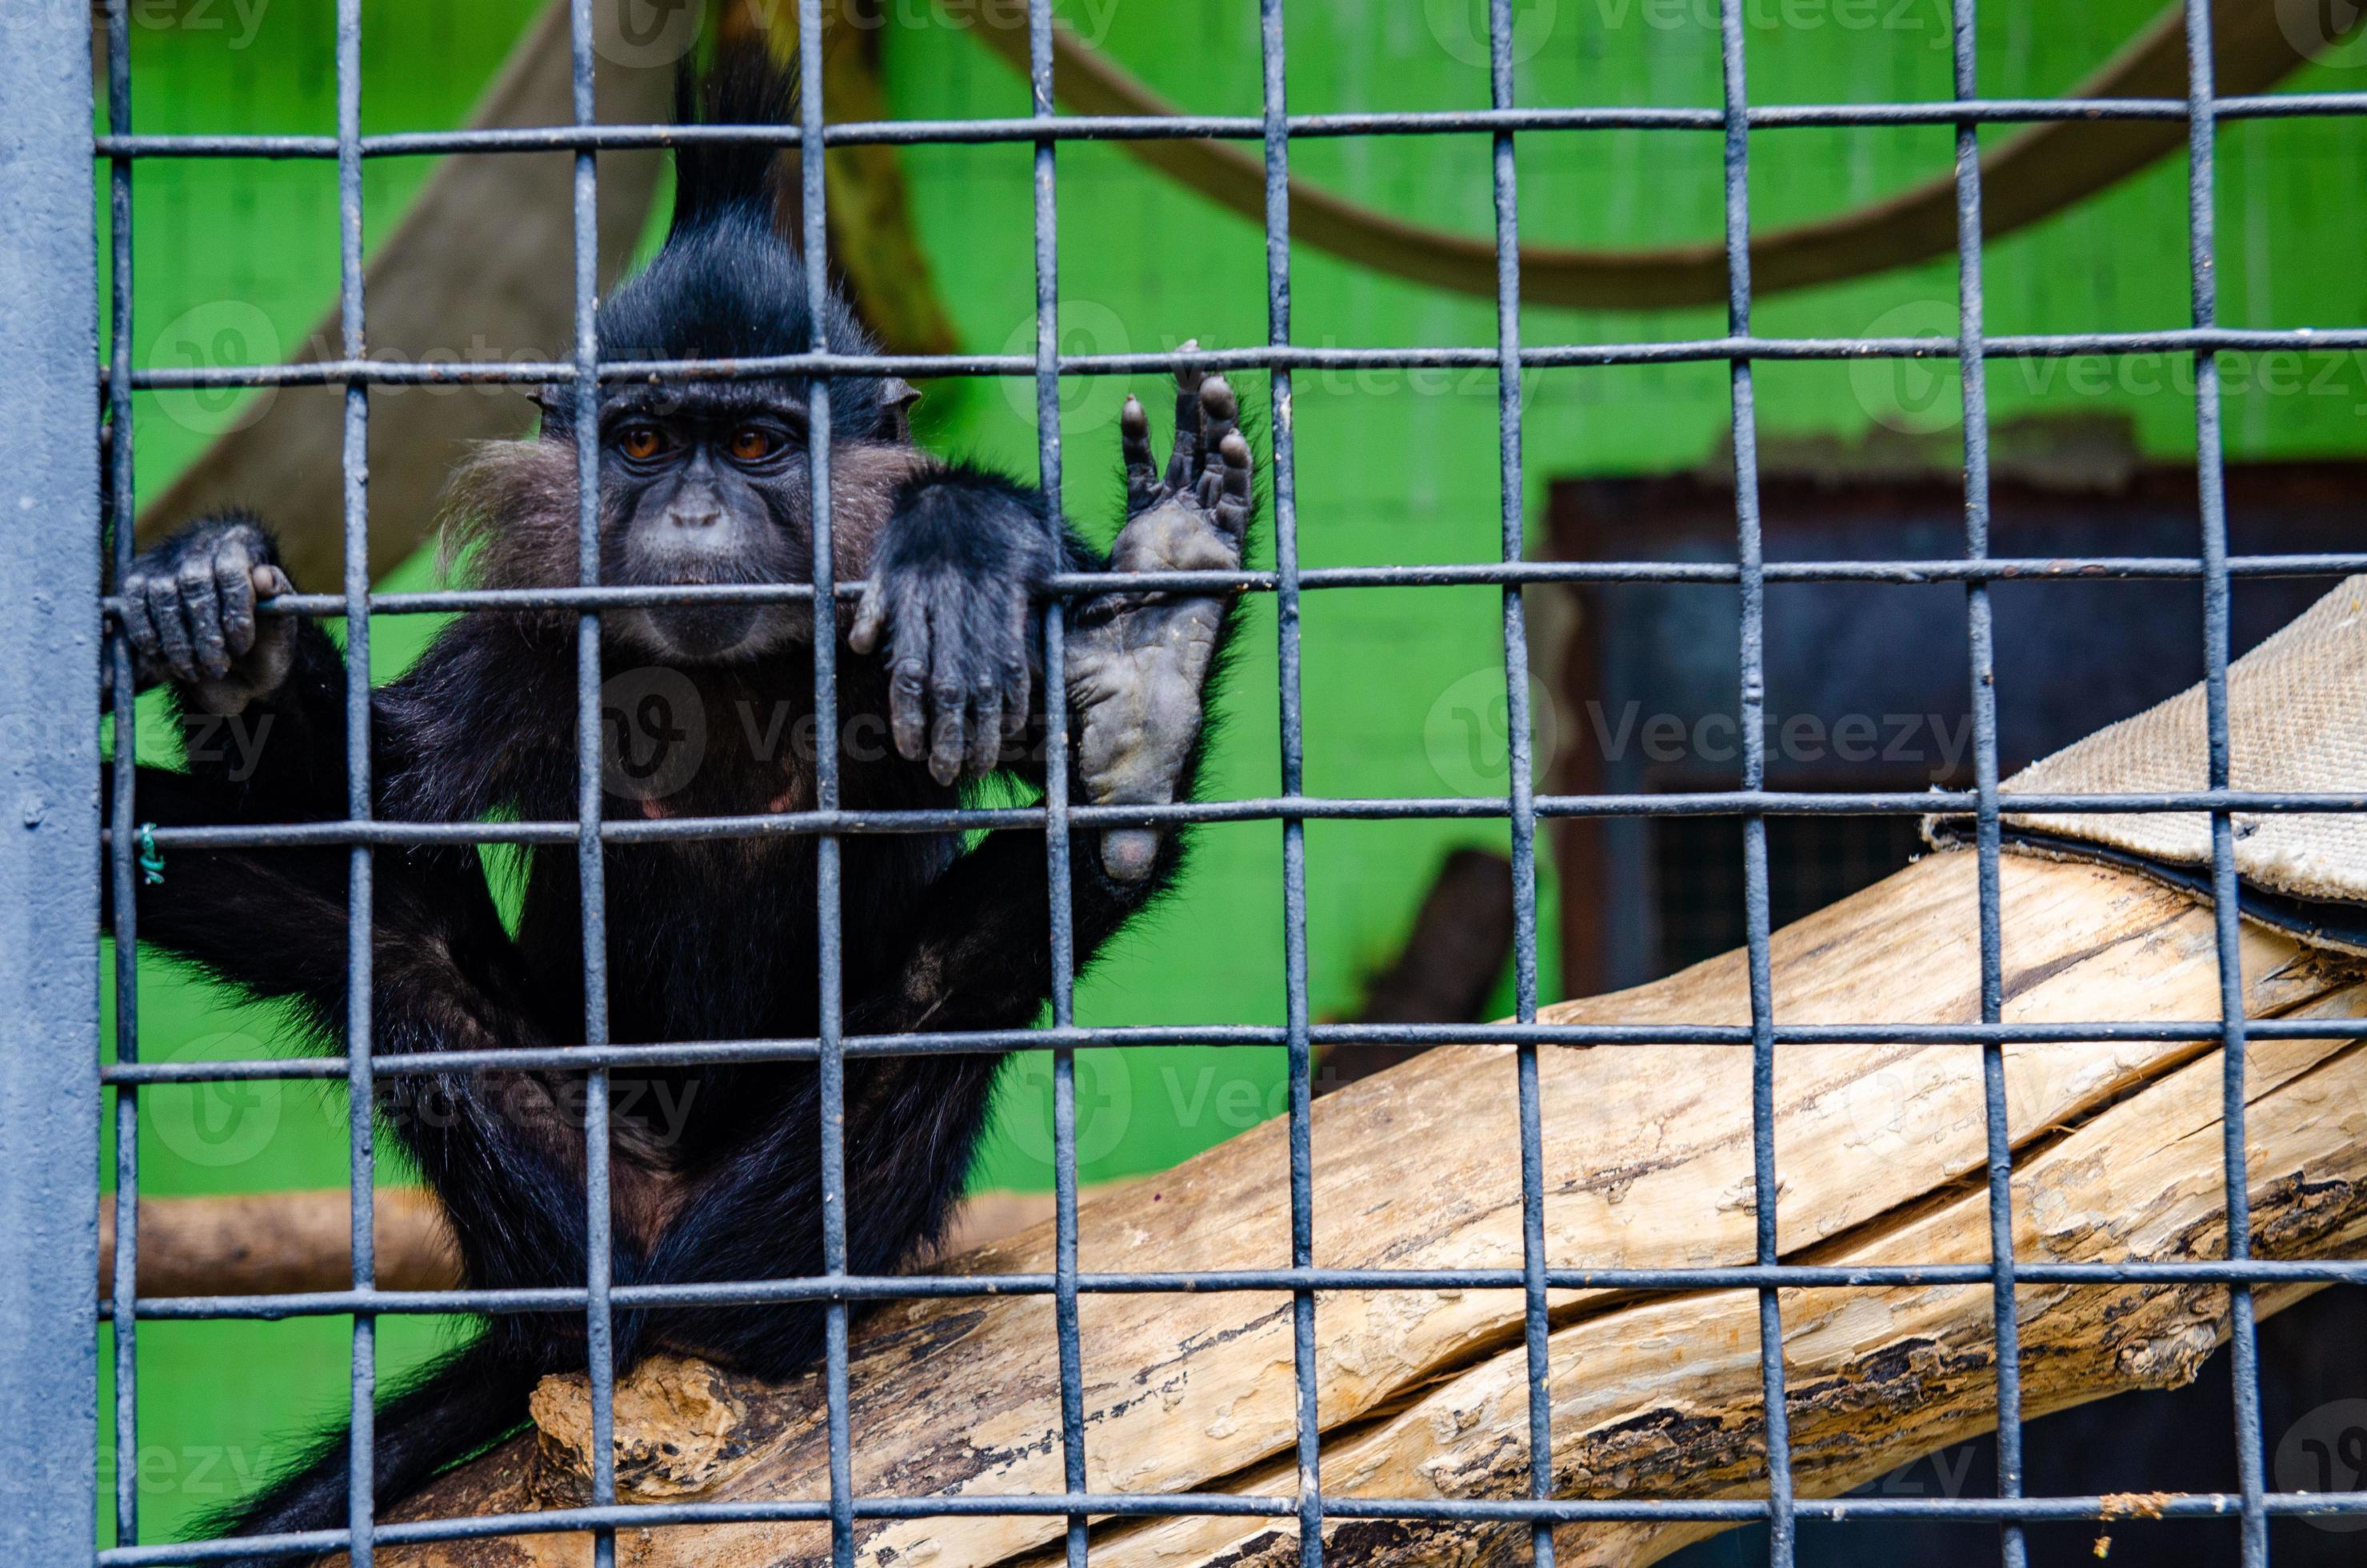 Ambiguo Pavimentación asignación un primer plano de un mono en una jaula en un zoológico 14282031 Foto de  stock en Vecteezy